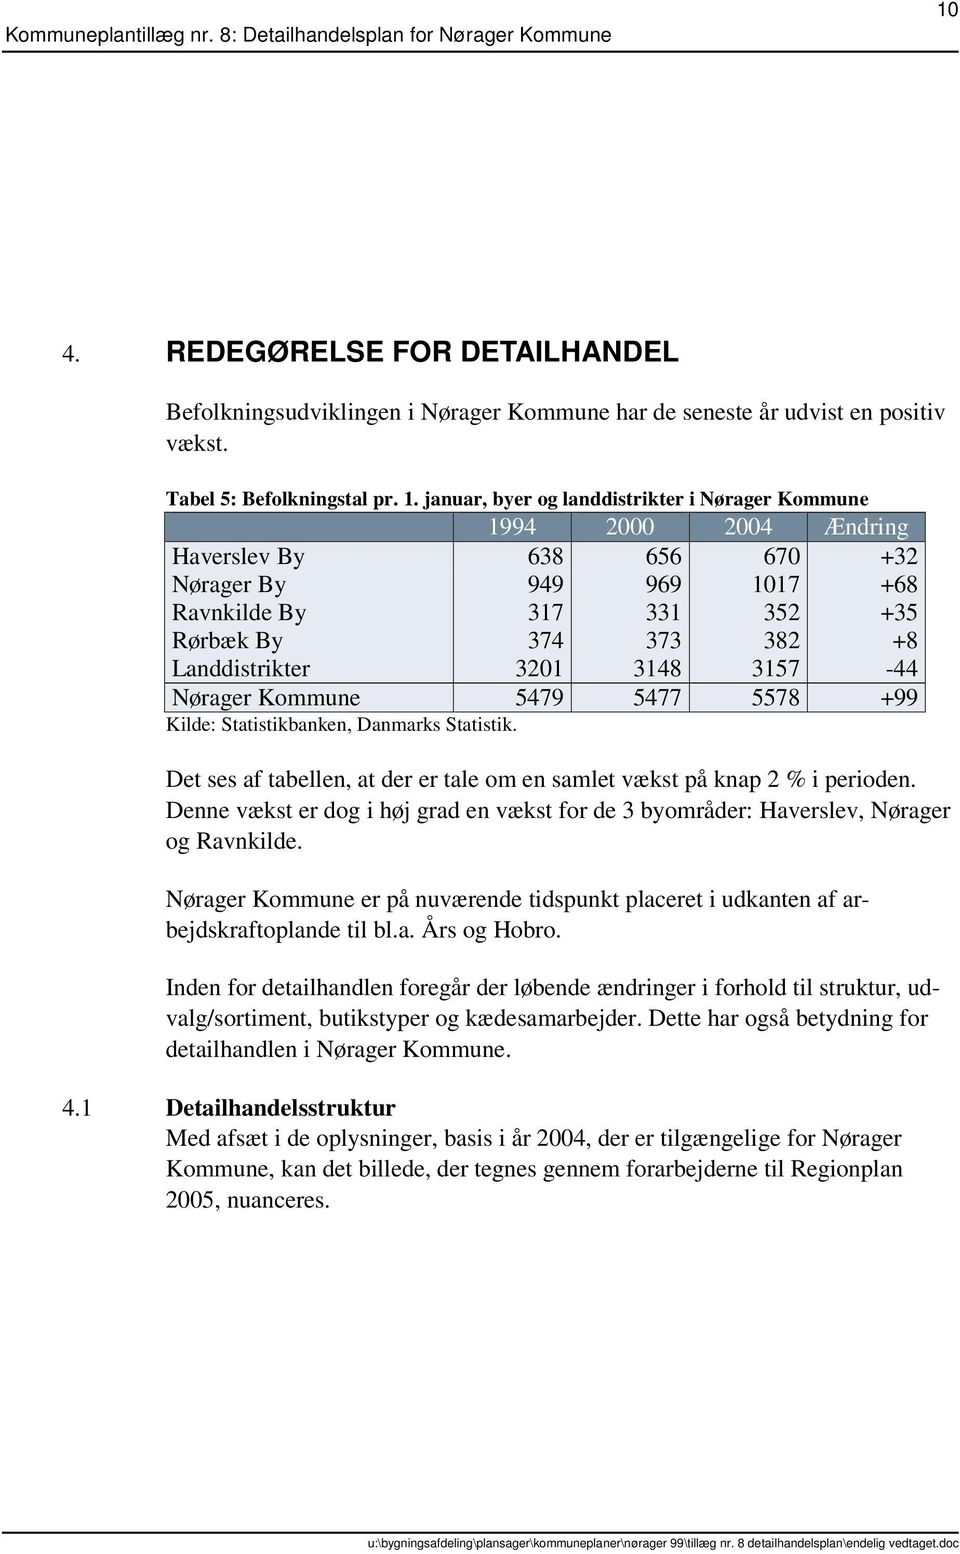 3201 3148 3157-44 Nørager Kommune 5479 5477 5578 +99 Kilde: Statistikbanken, Danmarks Statistik. Det ses af tabellen, at der er tale om en samlet vækst på knap 2 % i perioden.